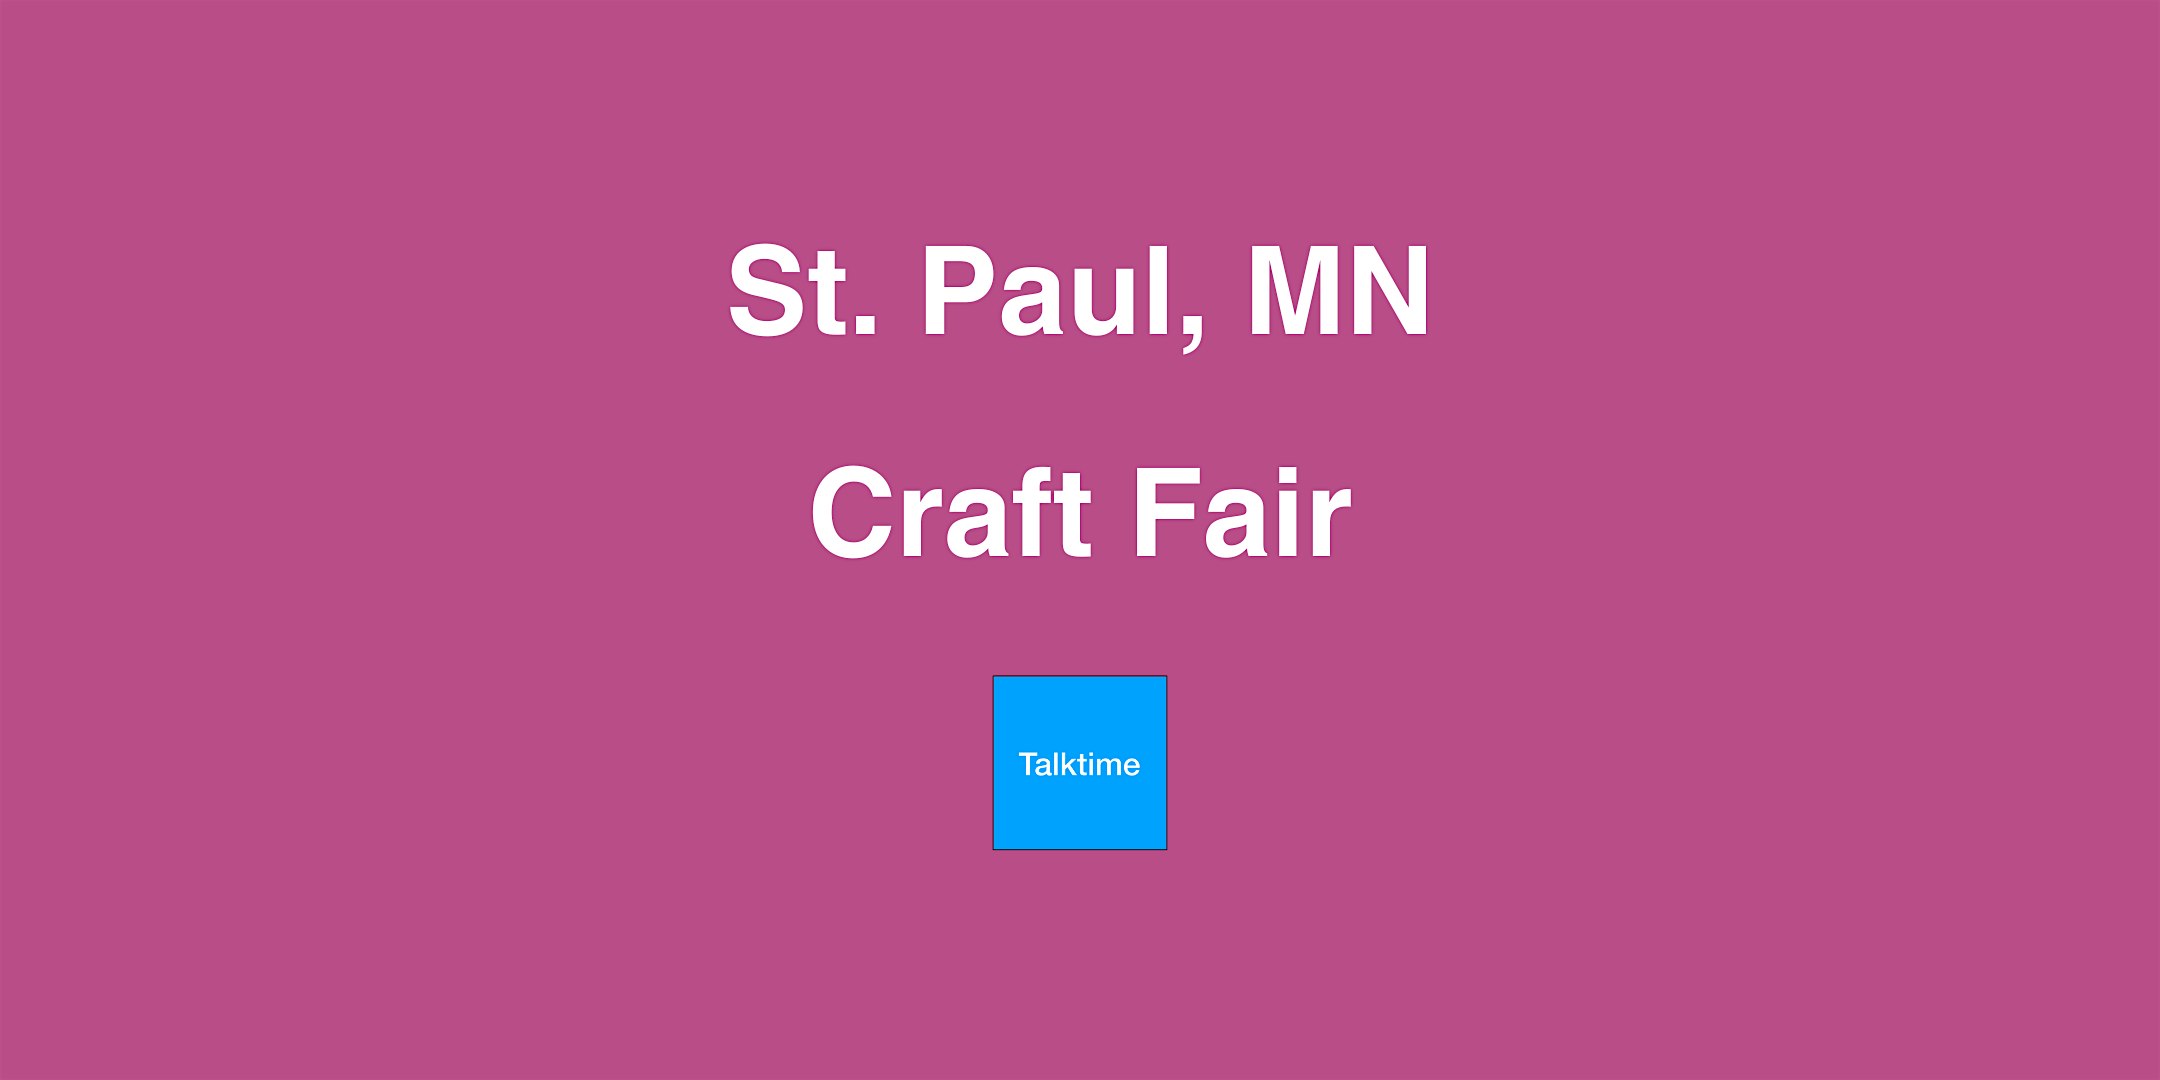 Craft Fair - St. Paul